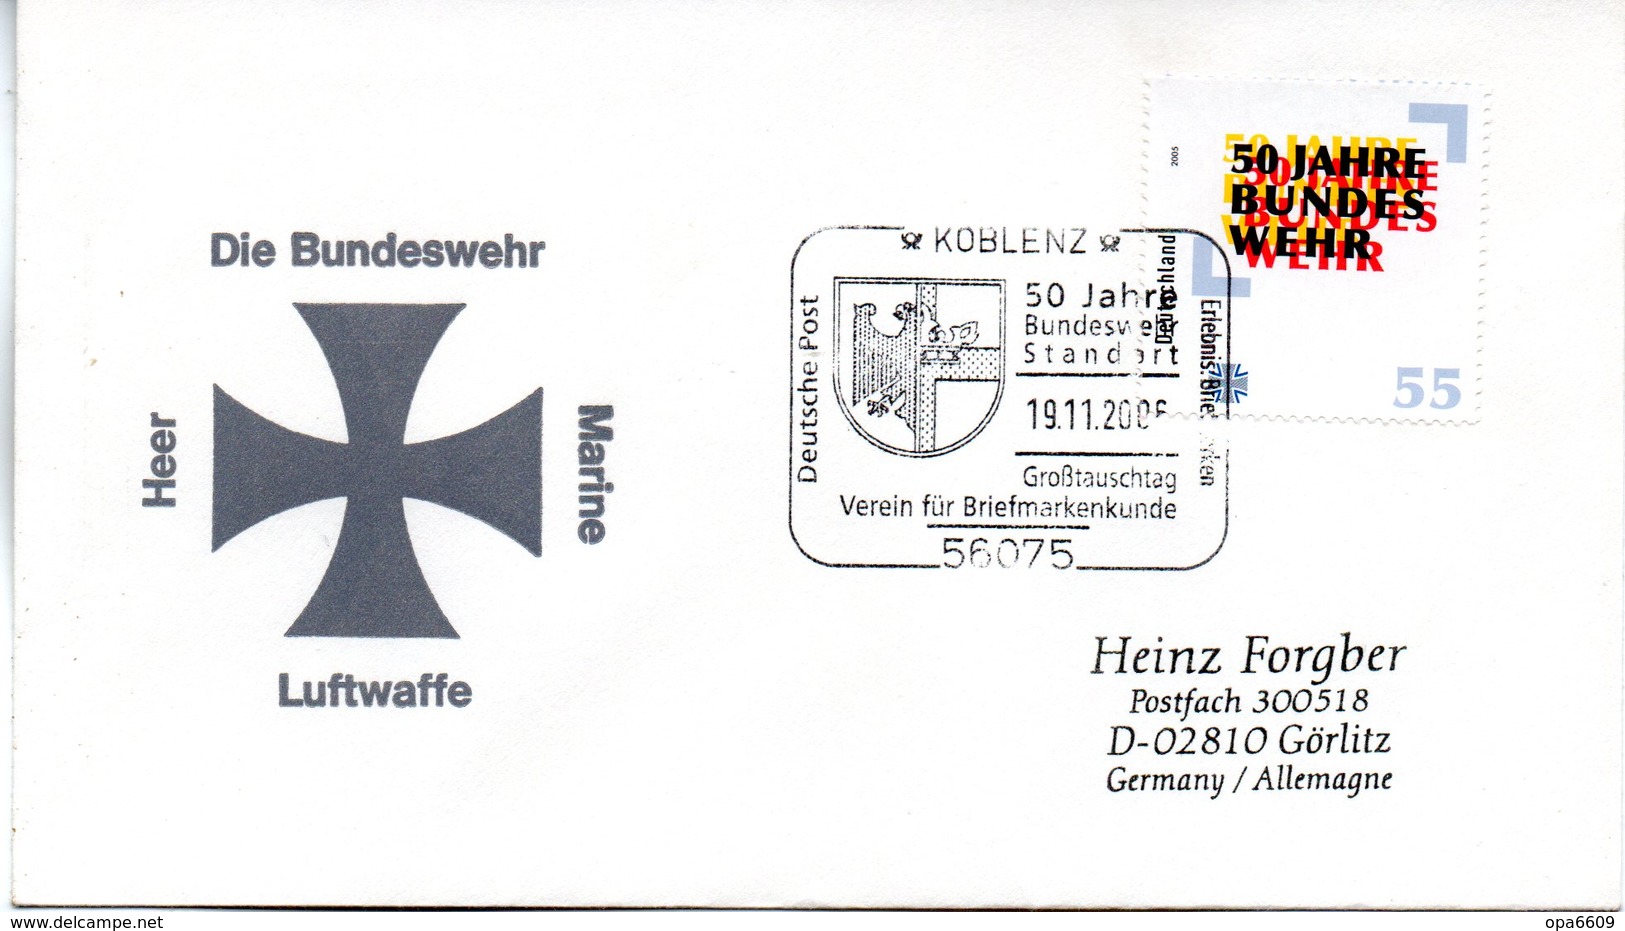 (FC3) BRD SonderUmschlag "DIE BUNDESWEHR" EF Mi 2497 WSt. 55(C) "50 Jahre Bundeswehr" SSt 19.11.2006 KOBLENZ - Militaria